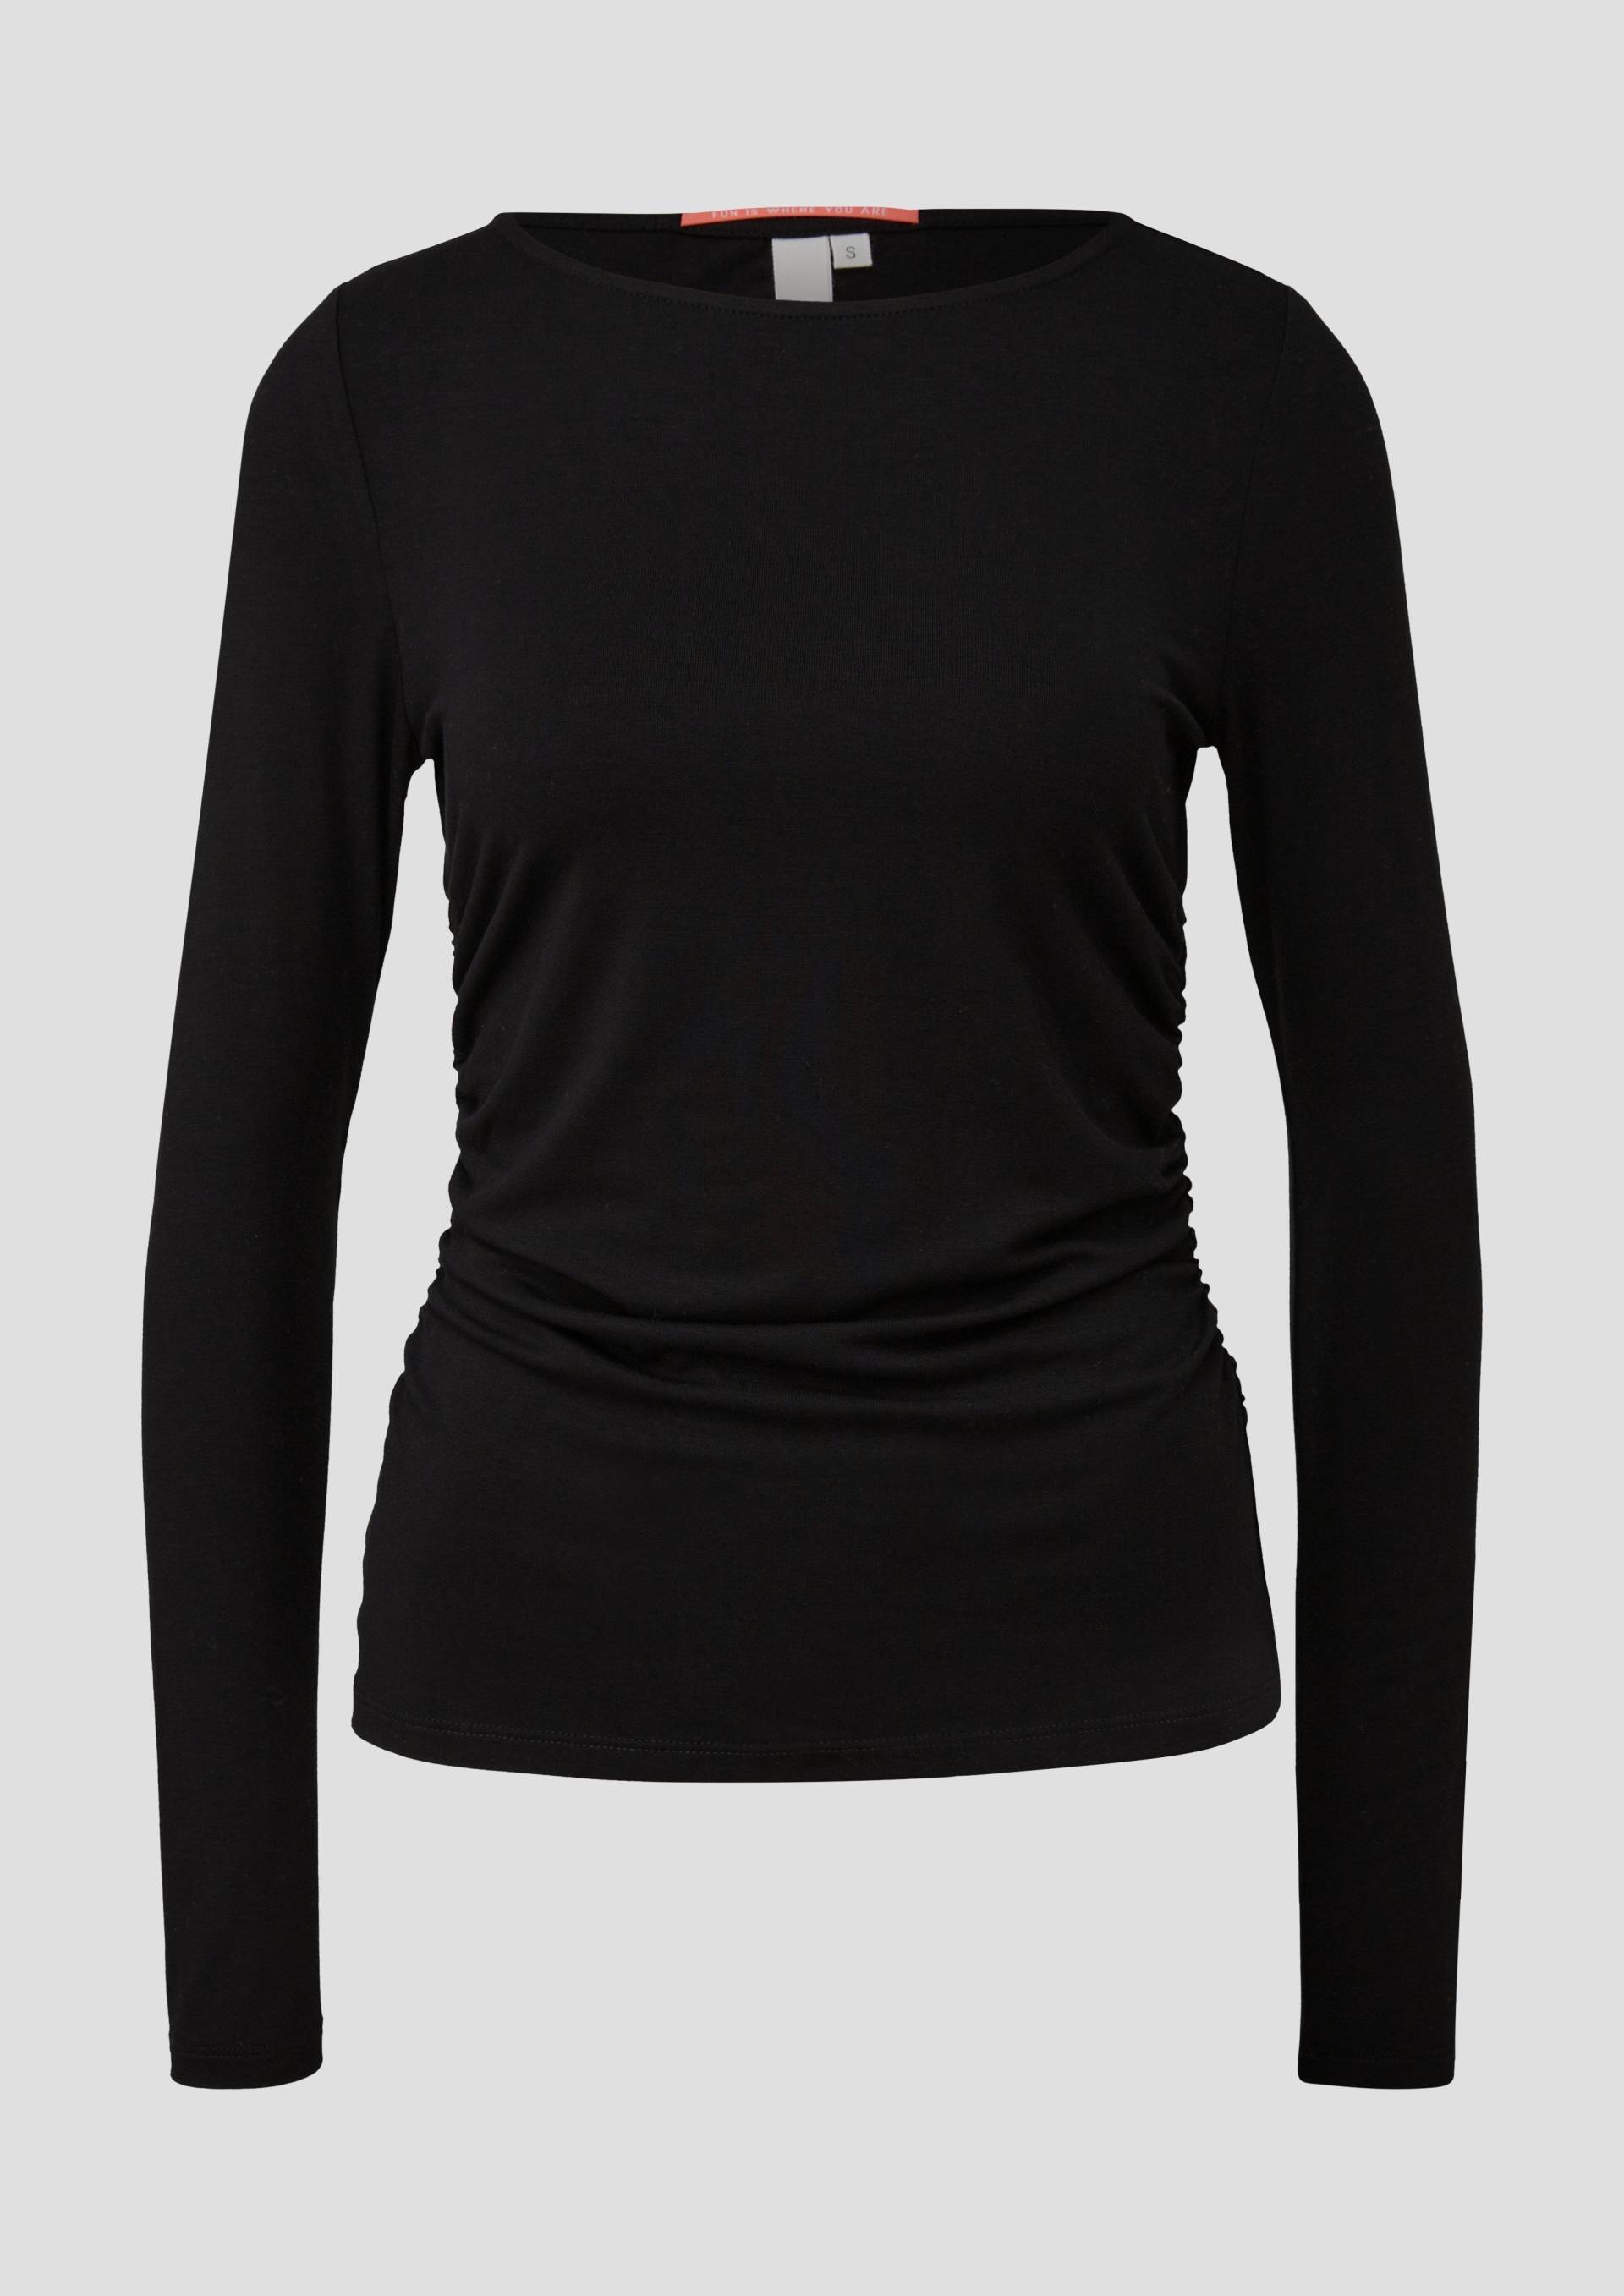 QS - Jerseyshirt mit seitlichen Raffungen, Damen, schwarz von QS